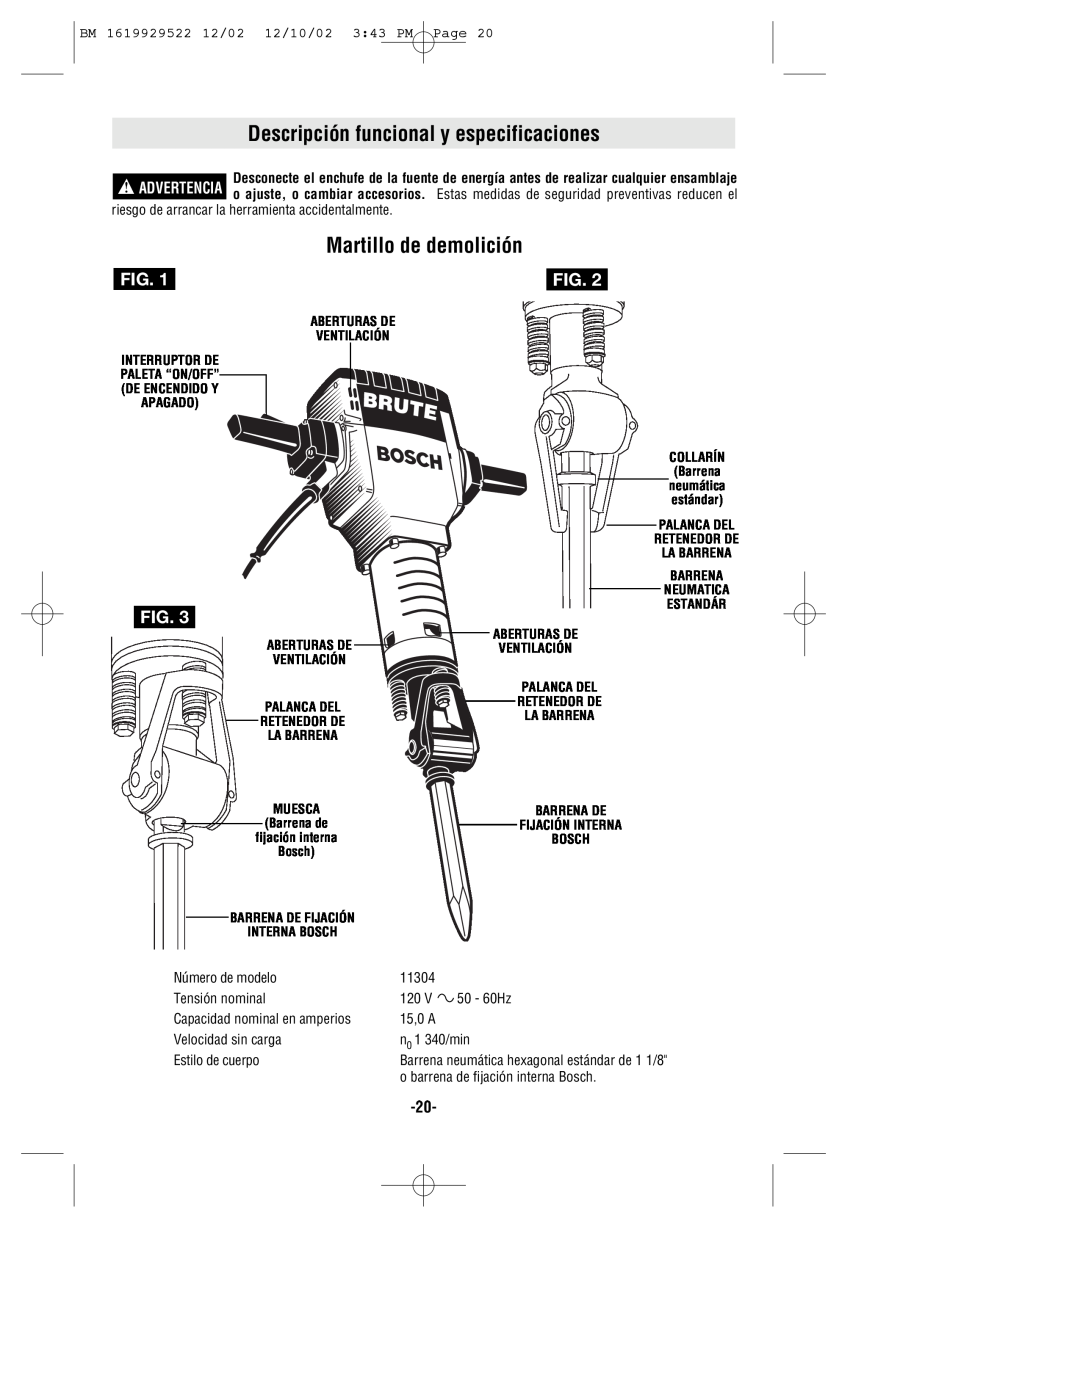 Bosch Power Tools 11304 Descripción funcional y especificaciones, Martillo de demolición, Número de modelo, 50 - 60Hz 